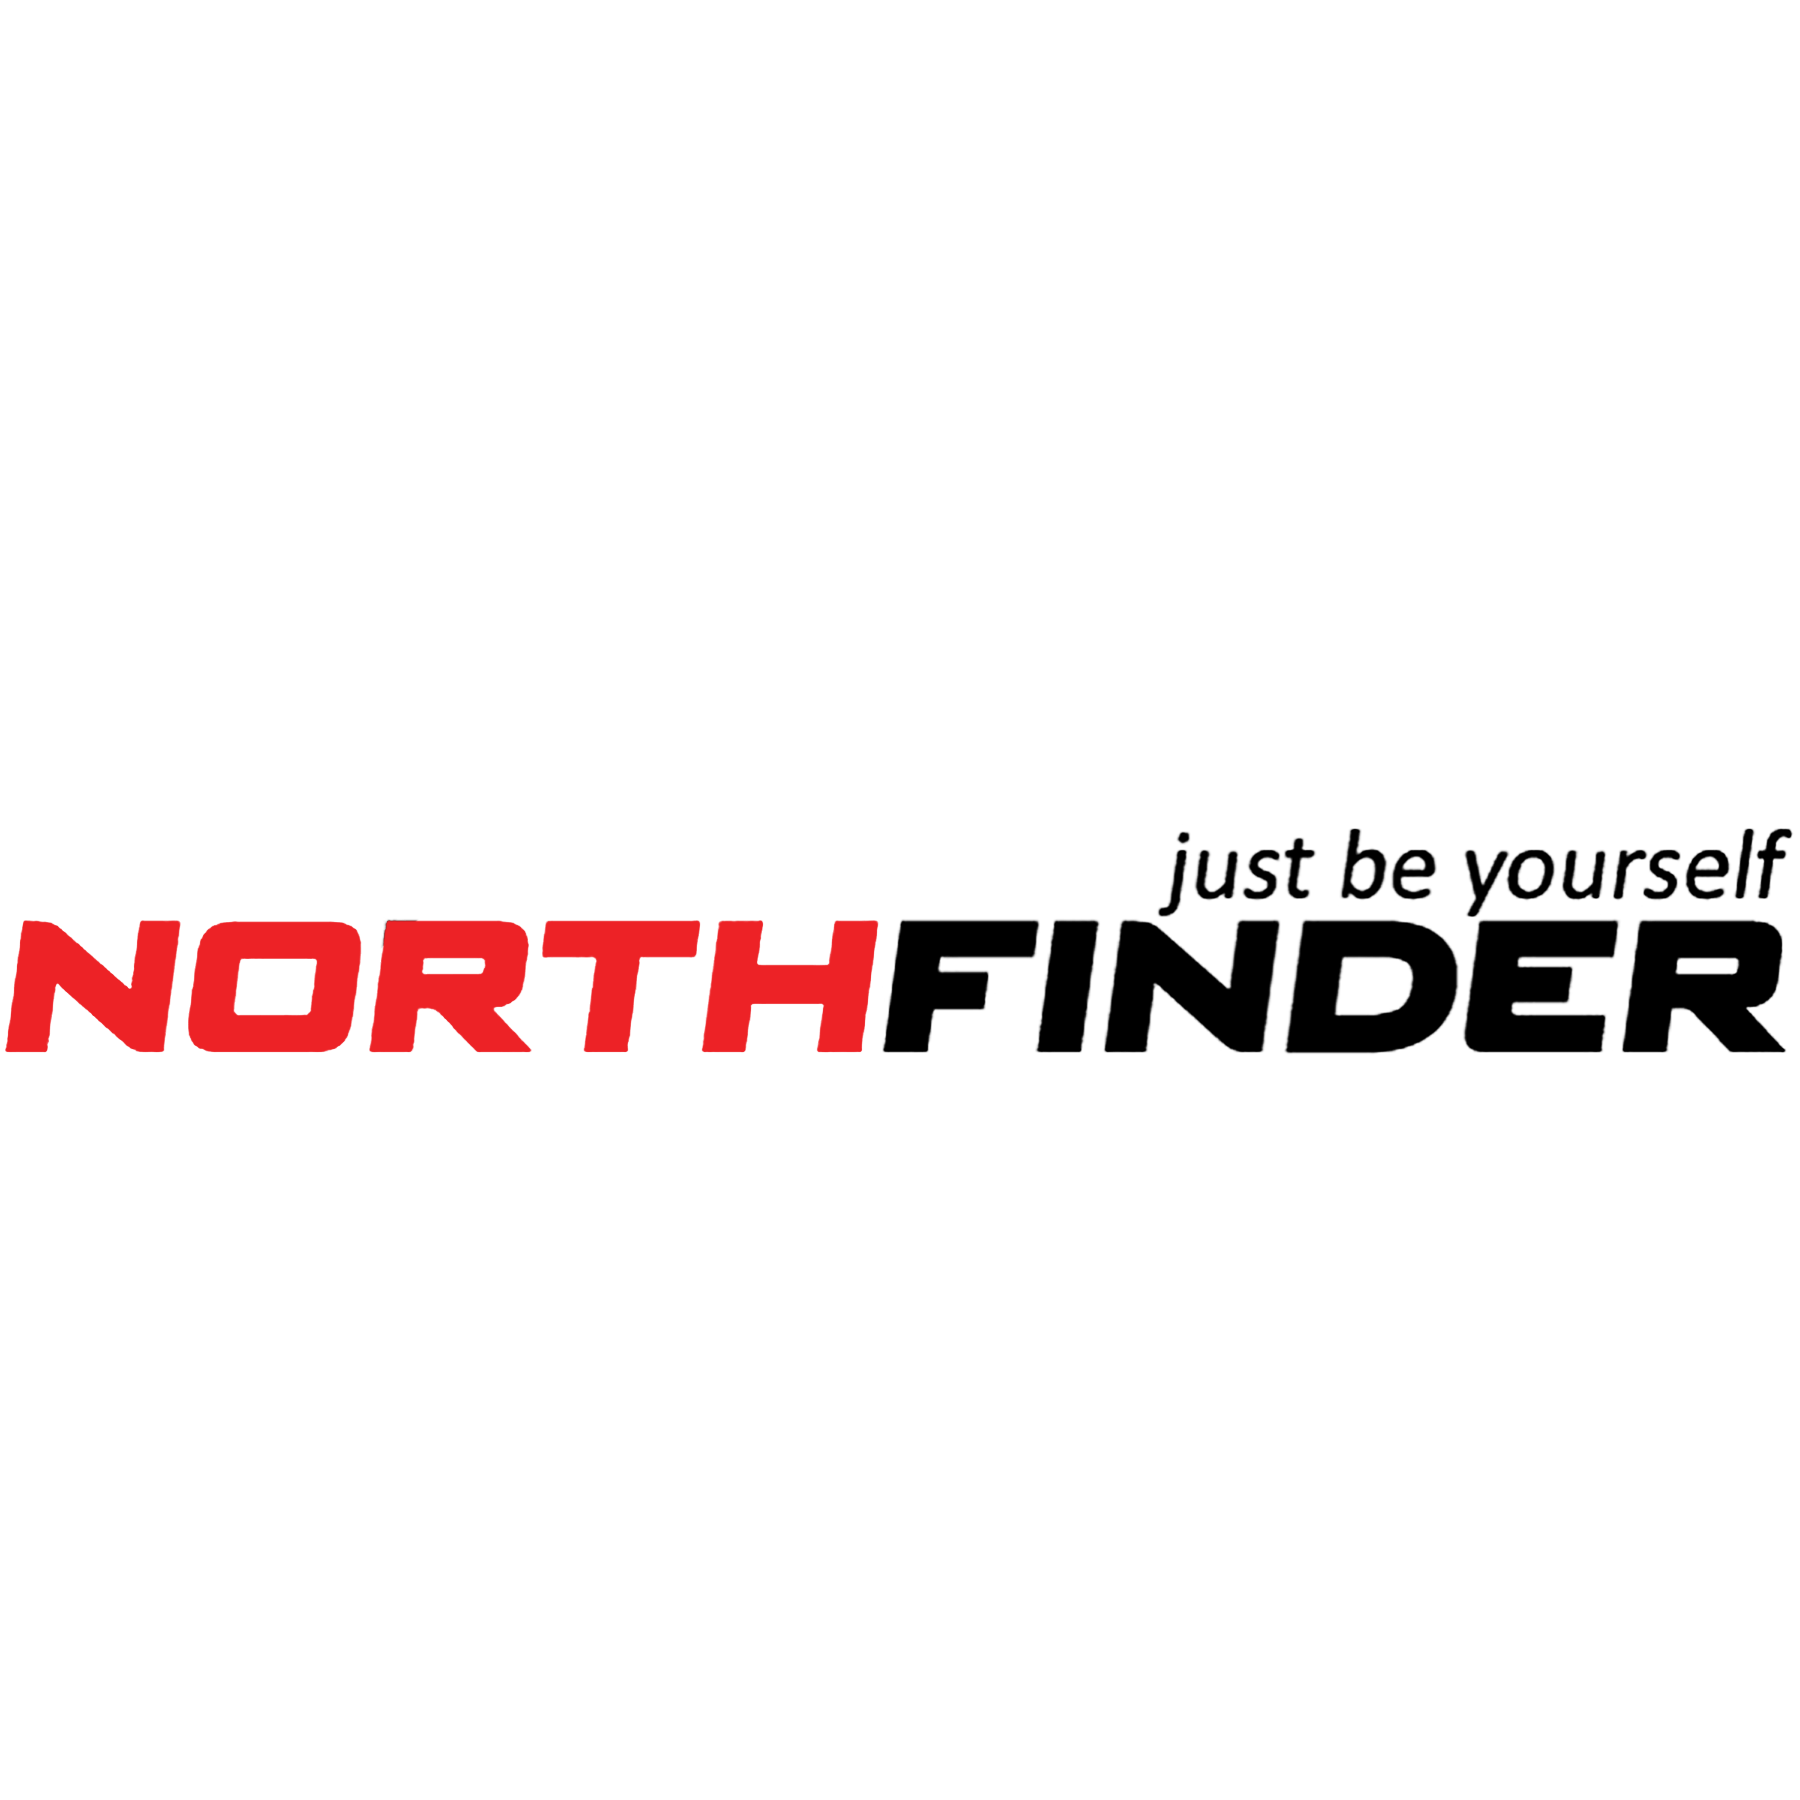 Northfinder